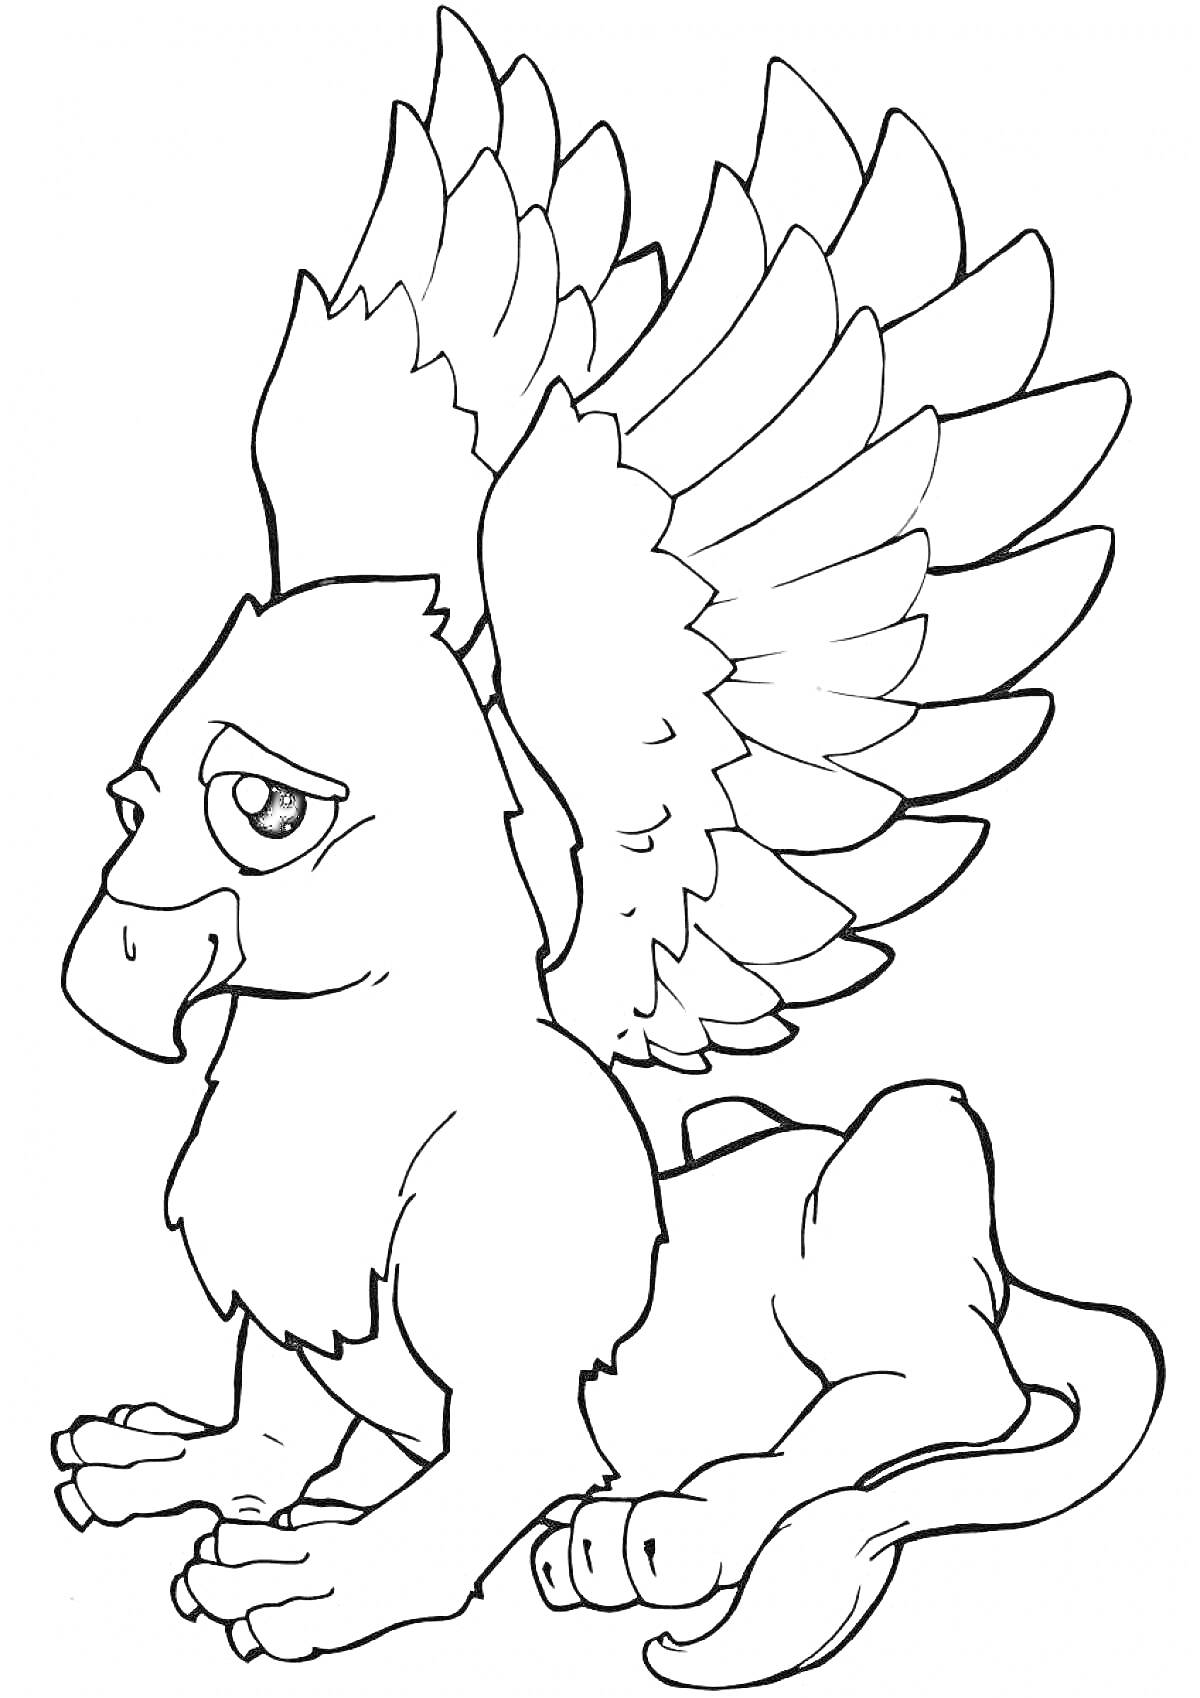 Раскраска Грифон с большими крыльями и львиным телом